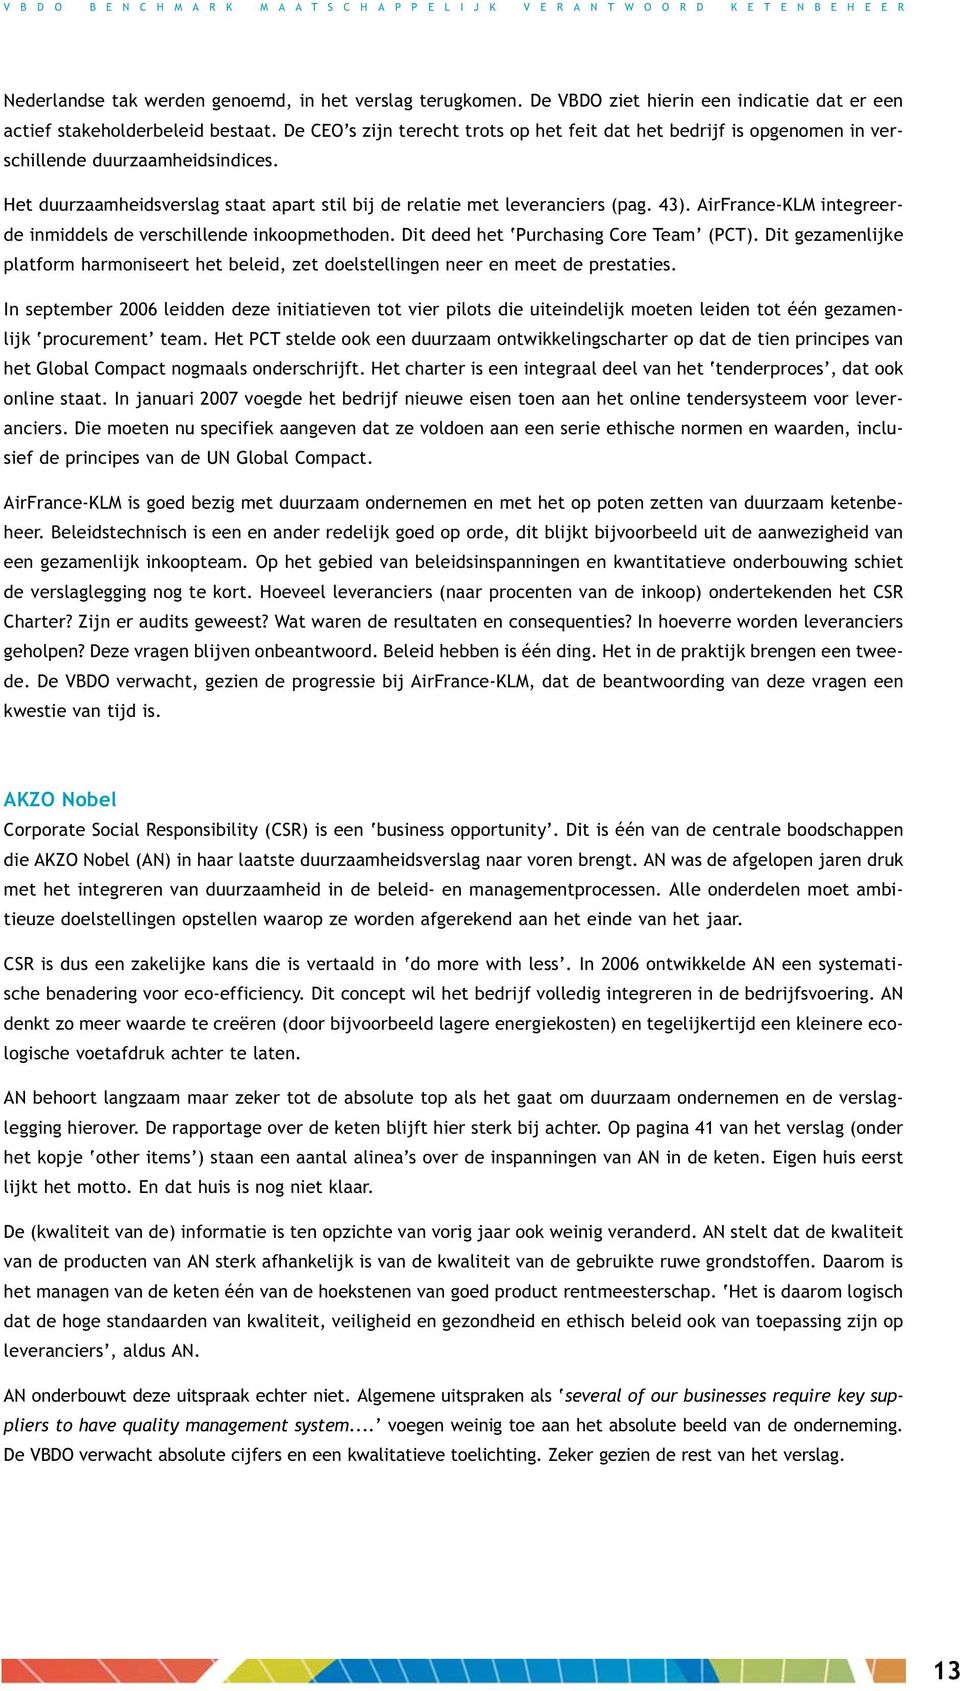 AirFrance-KLM integreerde inmiddels de verschillende inkoopmethoden. Dit deed het Purchasing Core Team (PCT).